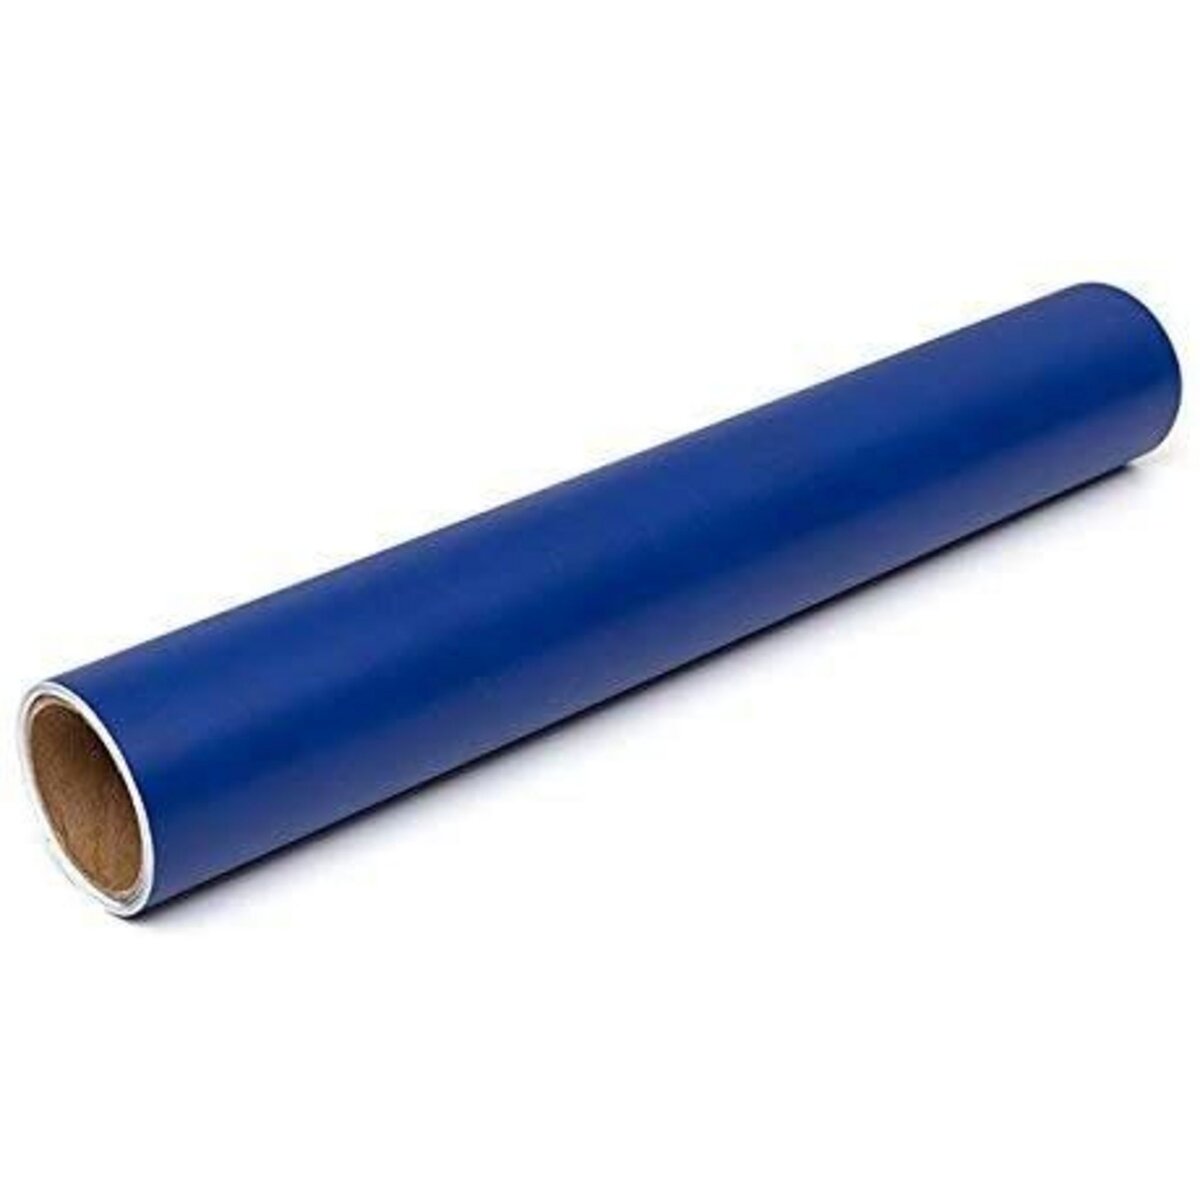 Artemio Rouleau de vinyle adhésif bleu marine 30,4 cm x 1,2 m pas cher 